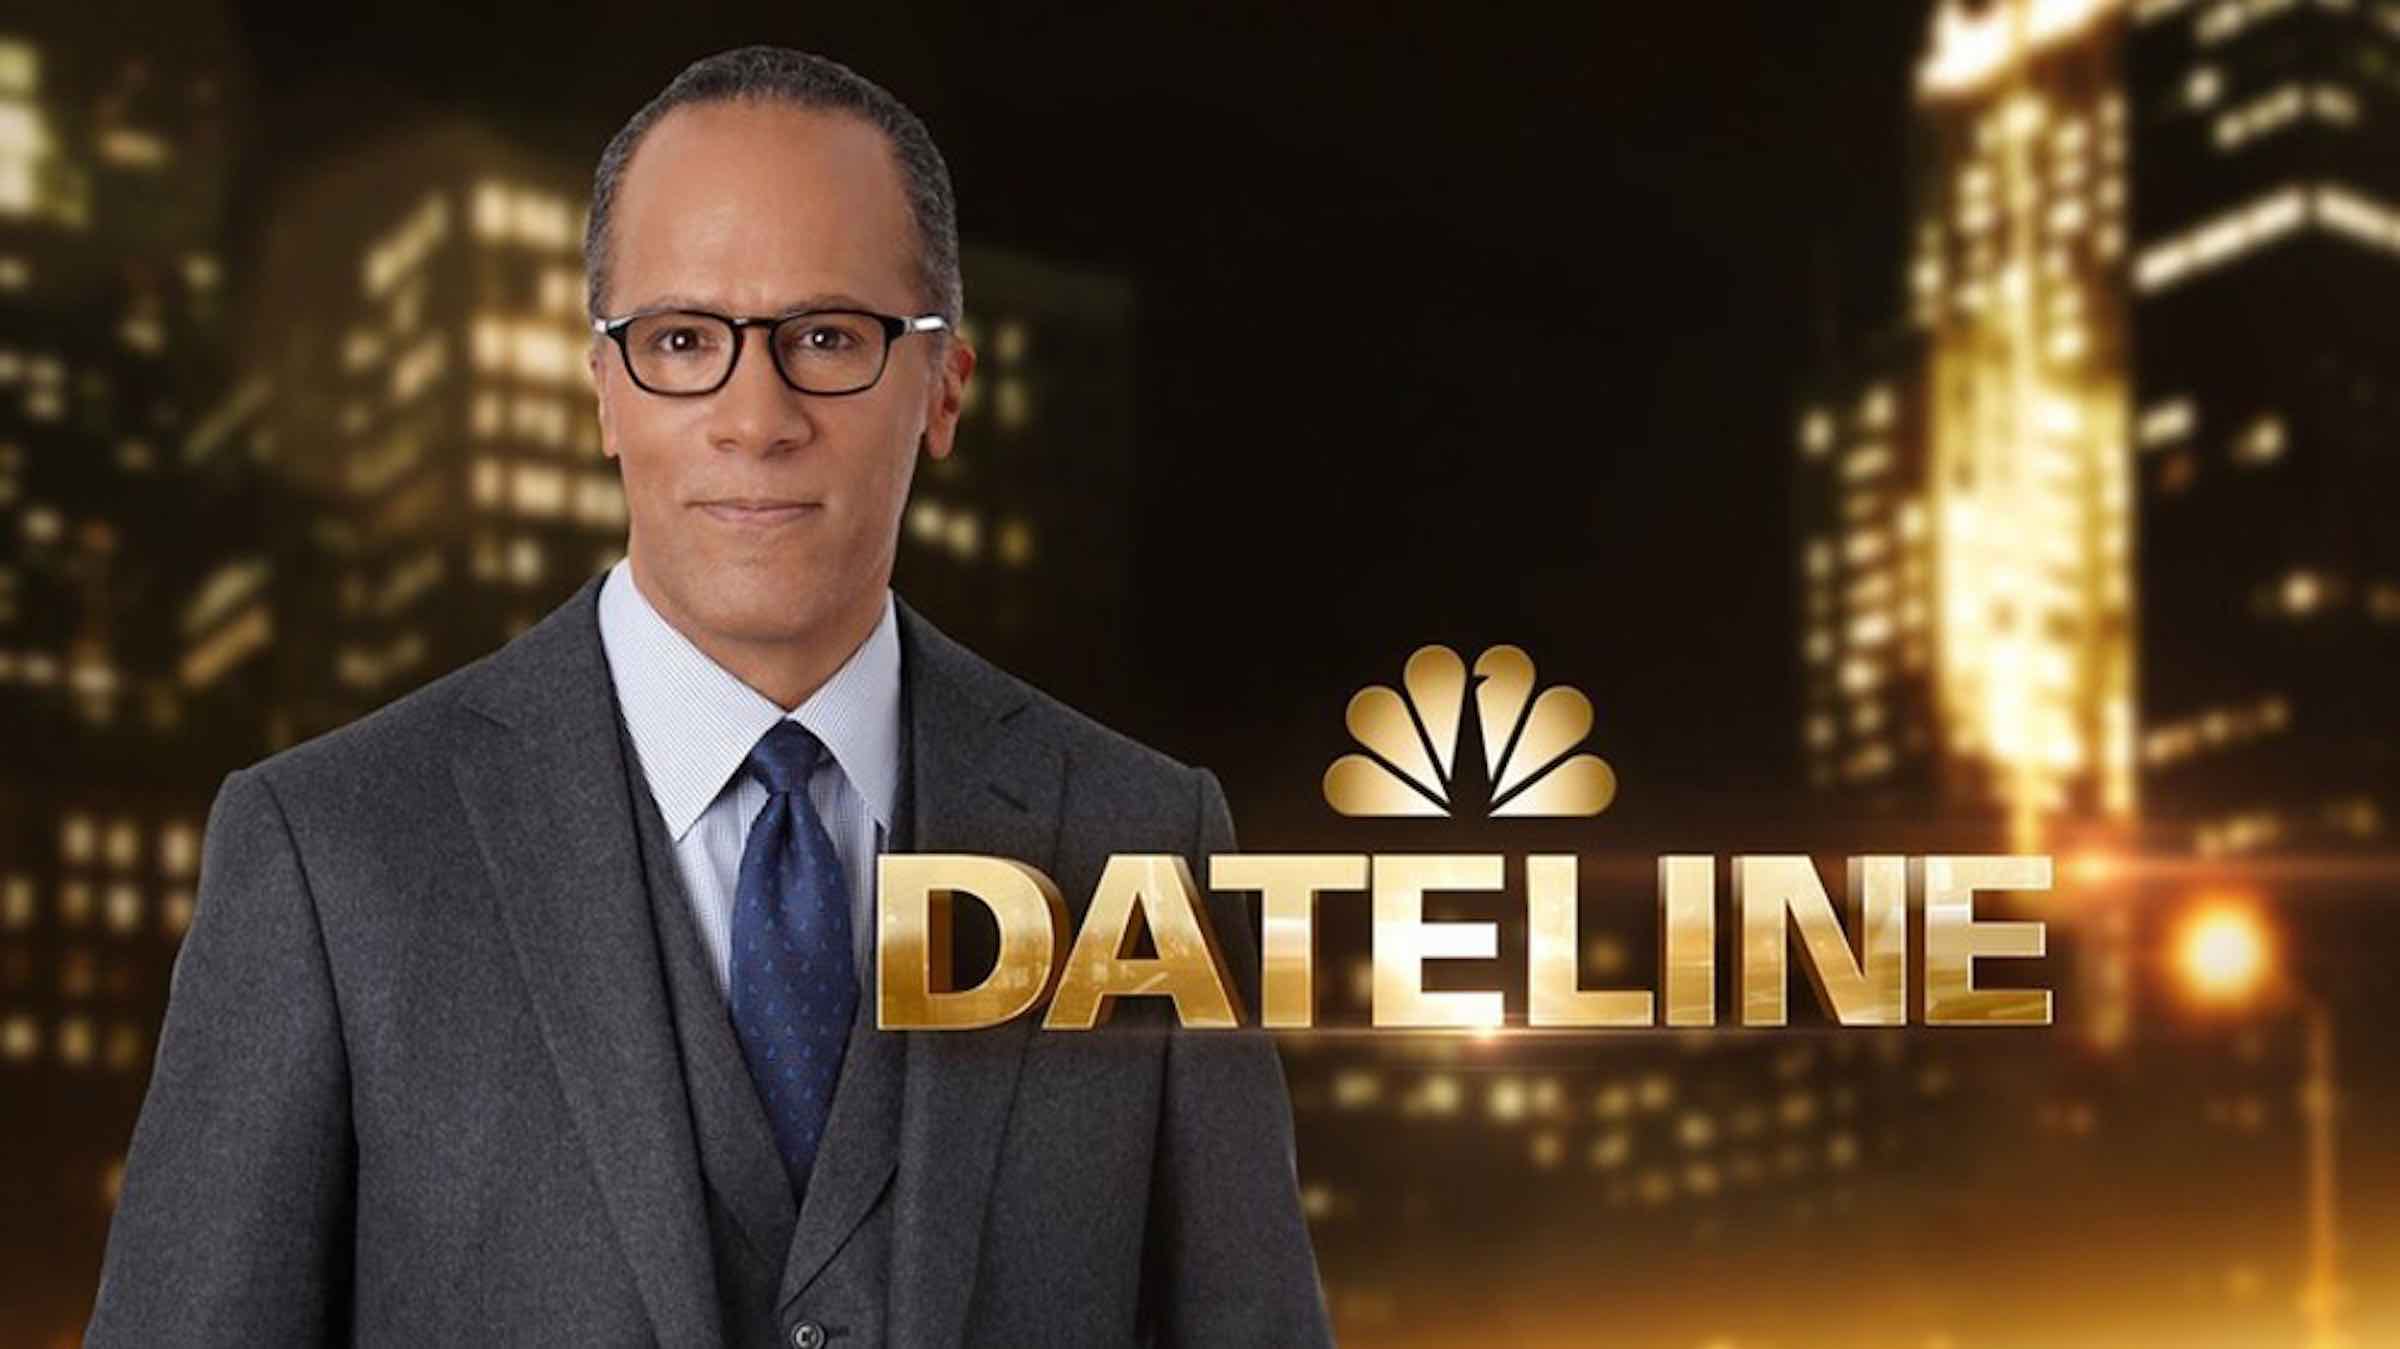 Die Dateline von NBC wurde für die 29. Staffel verlängert